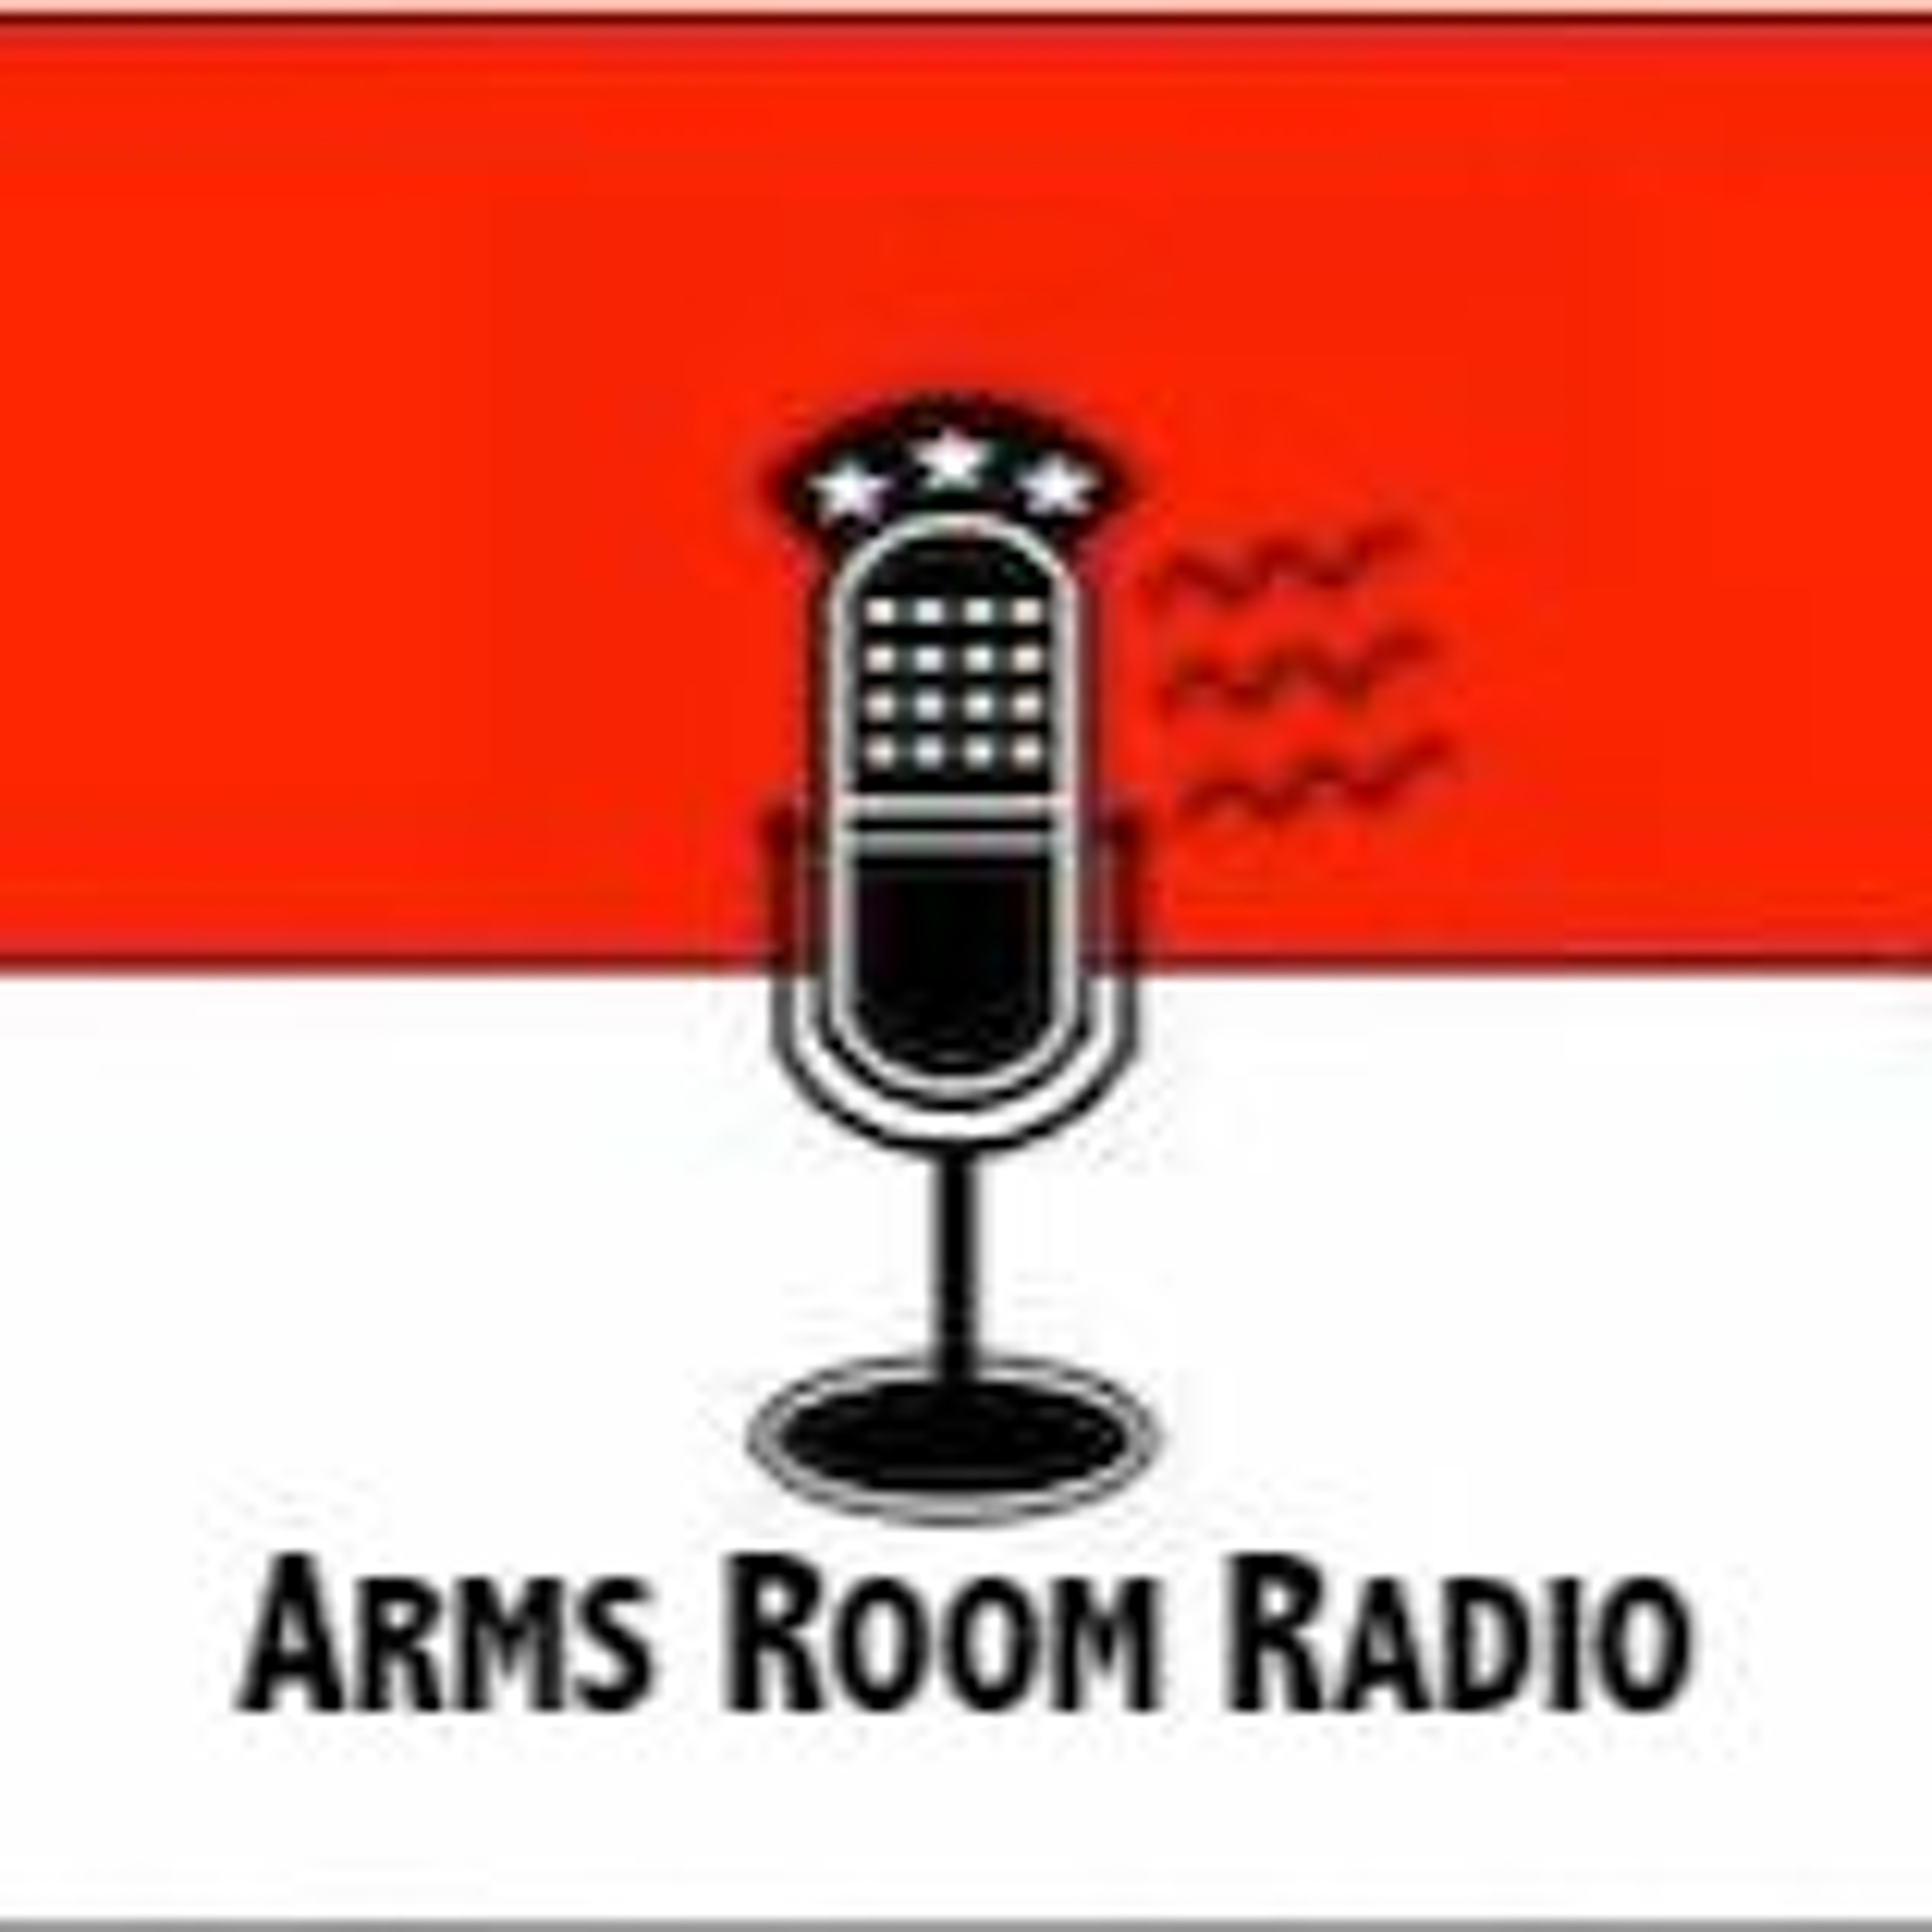 ArmsRoomRadio 01.07.23 Dave’Boon’Benton at Always Armed